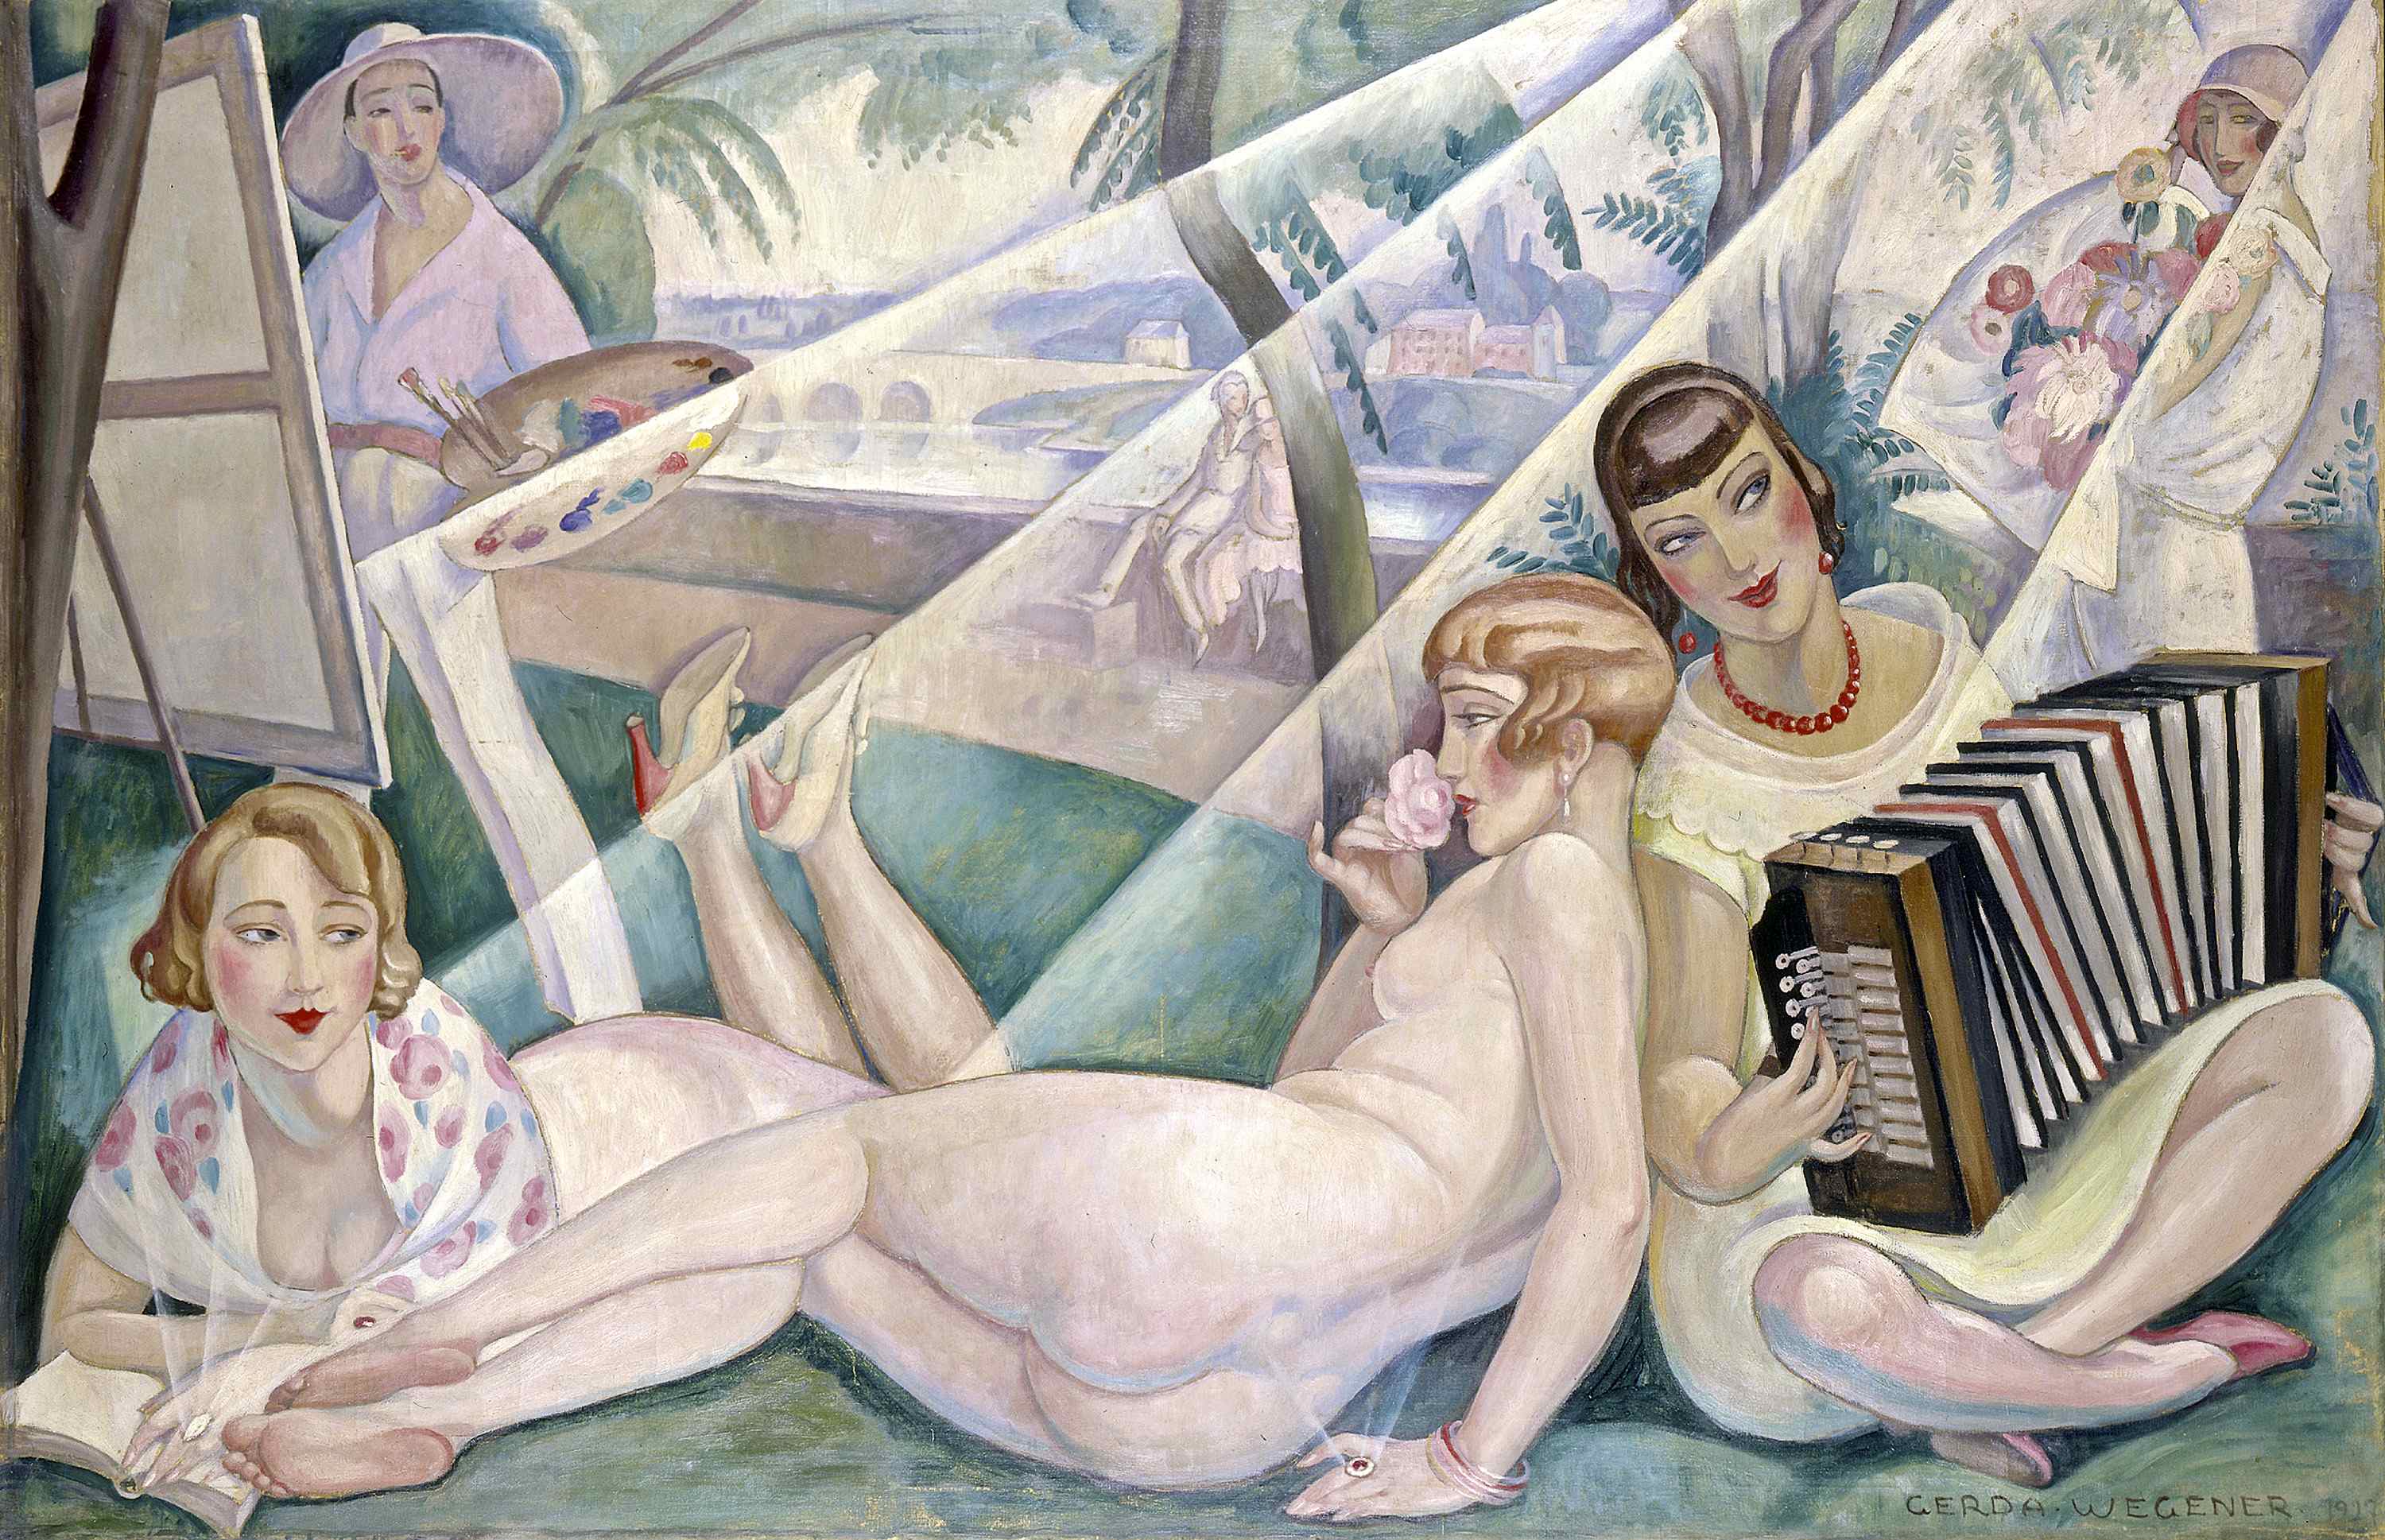 Gerda Wegner, En Sommerdag (A Summer Day), 1927